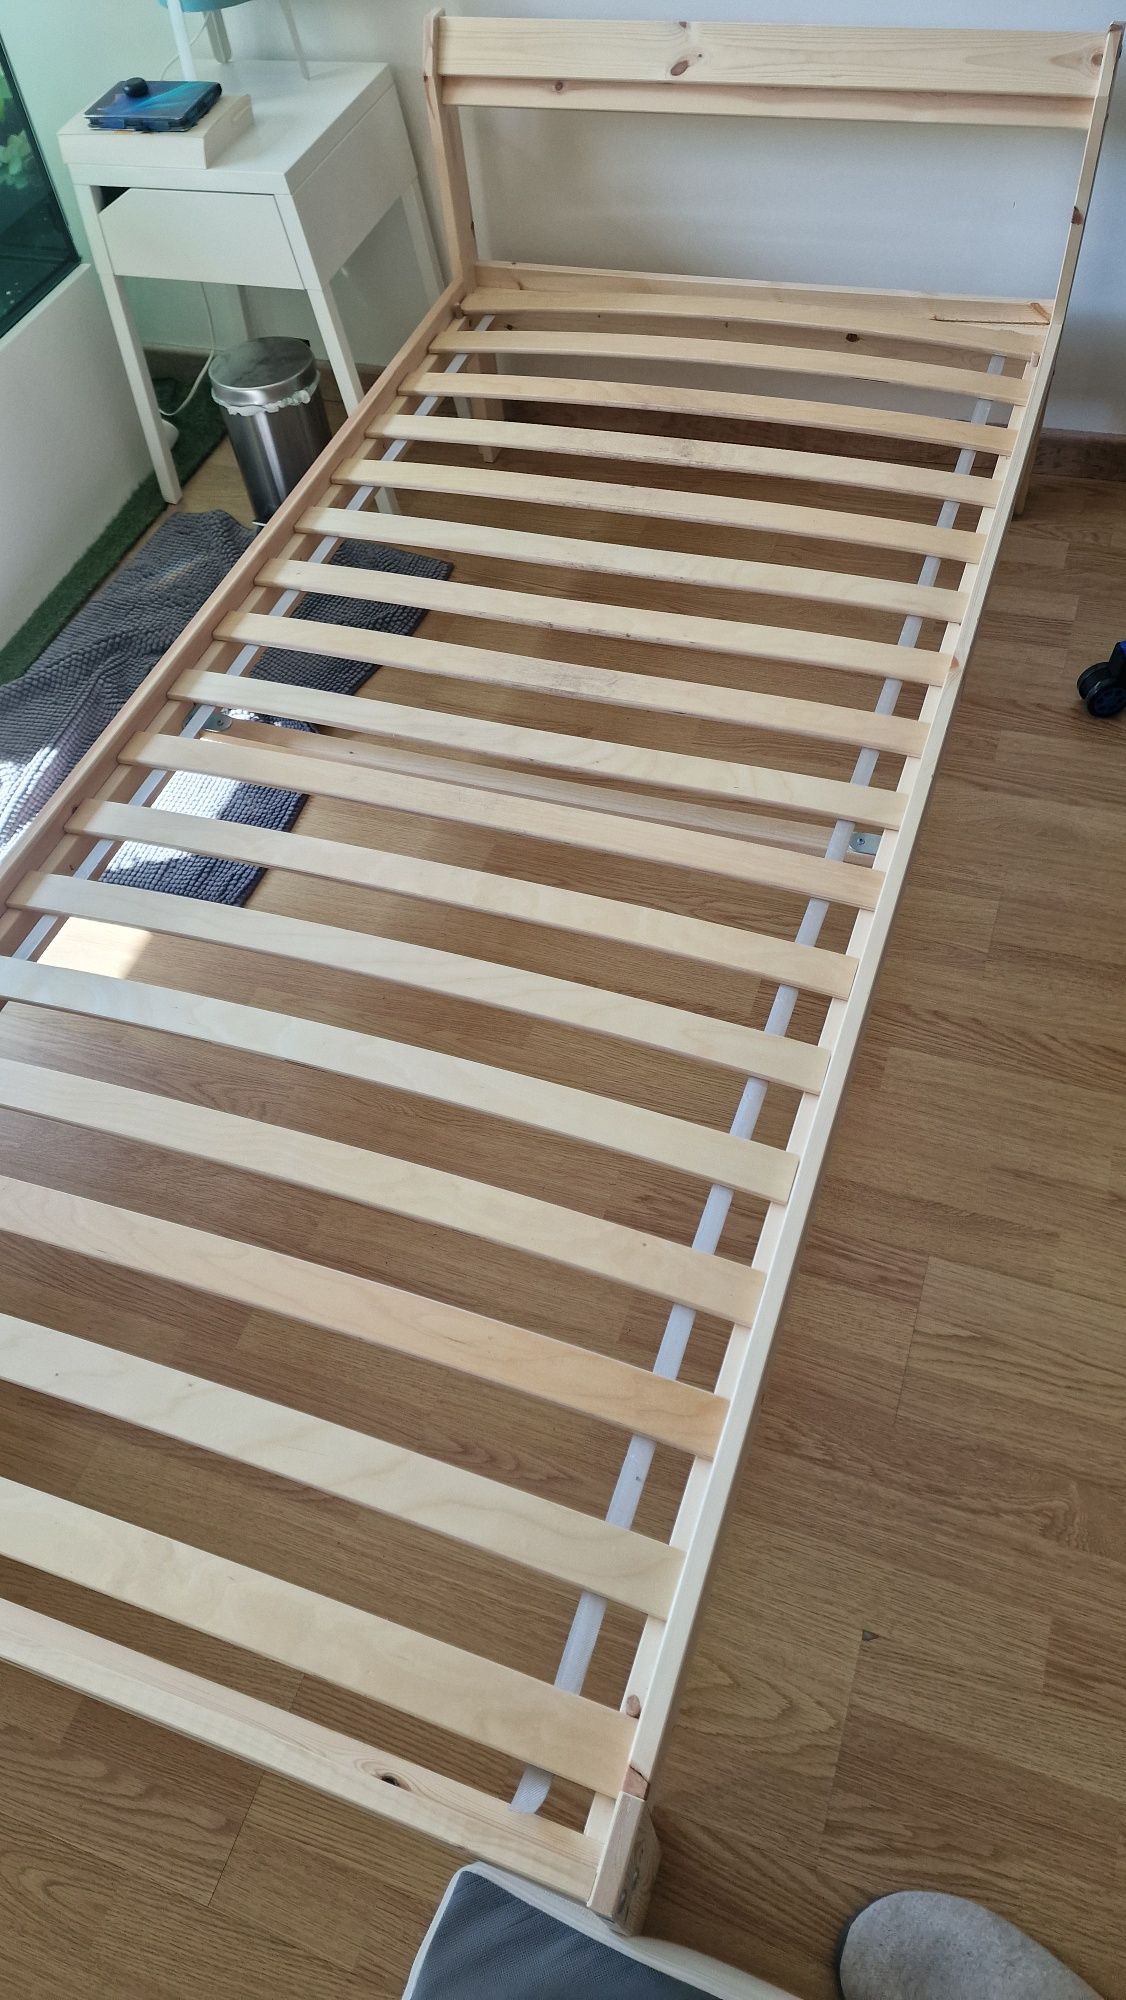 Cama individual IKEA (com estrado e colchão)